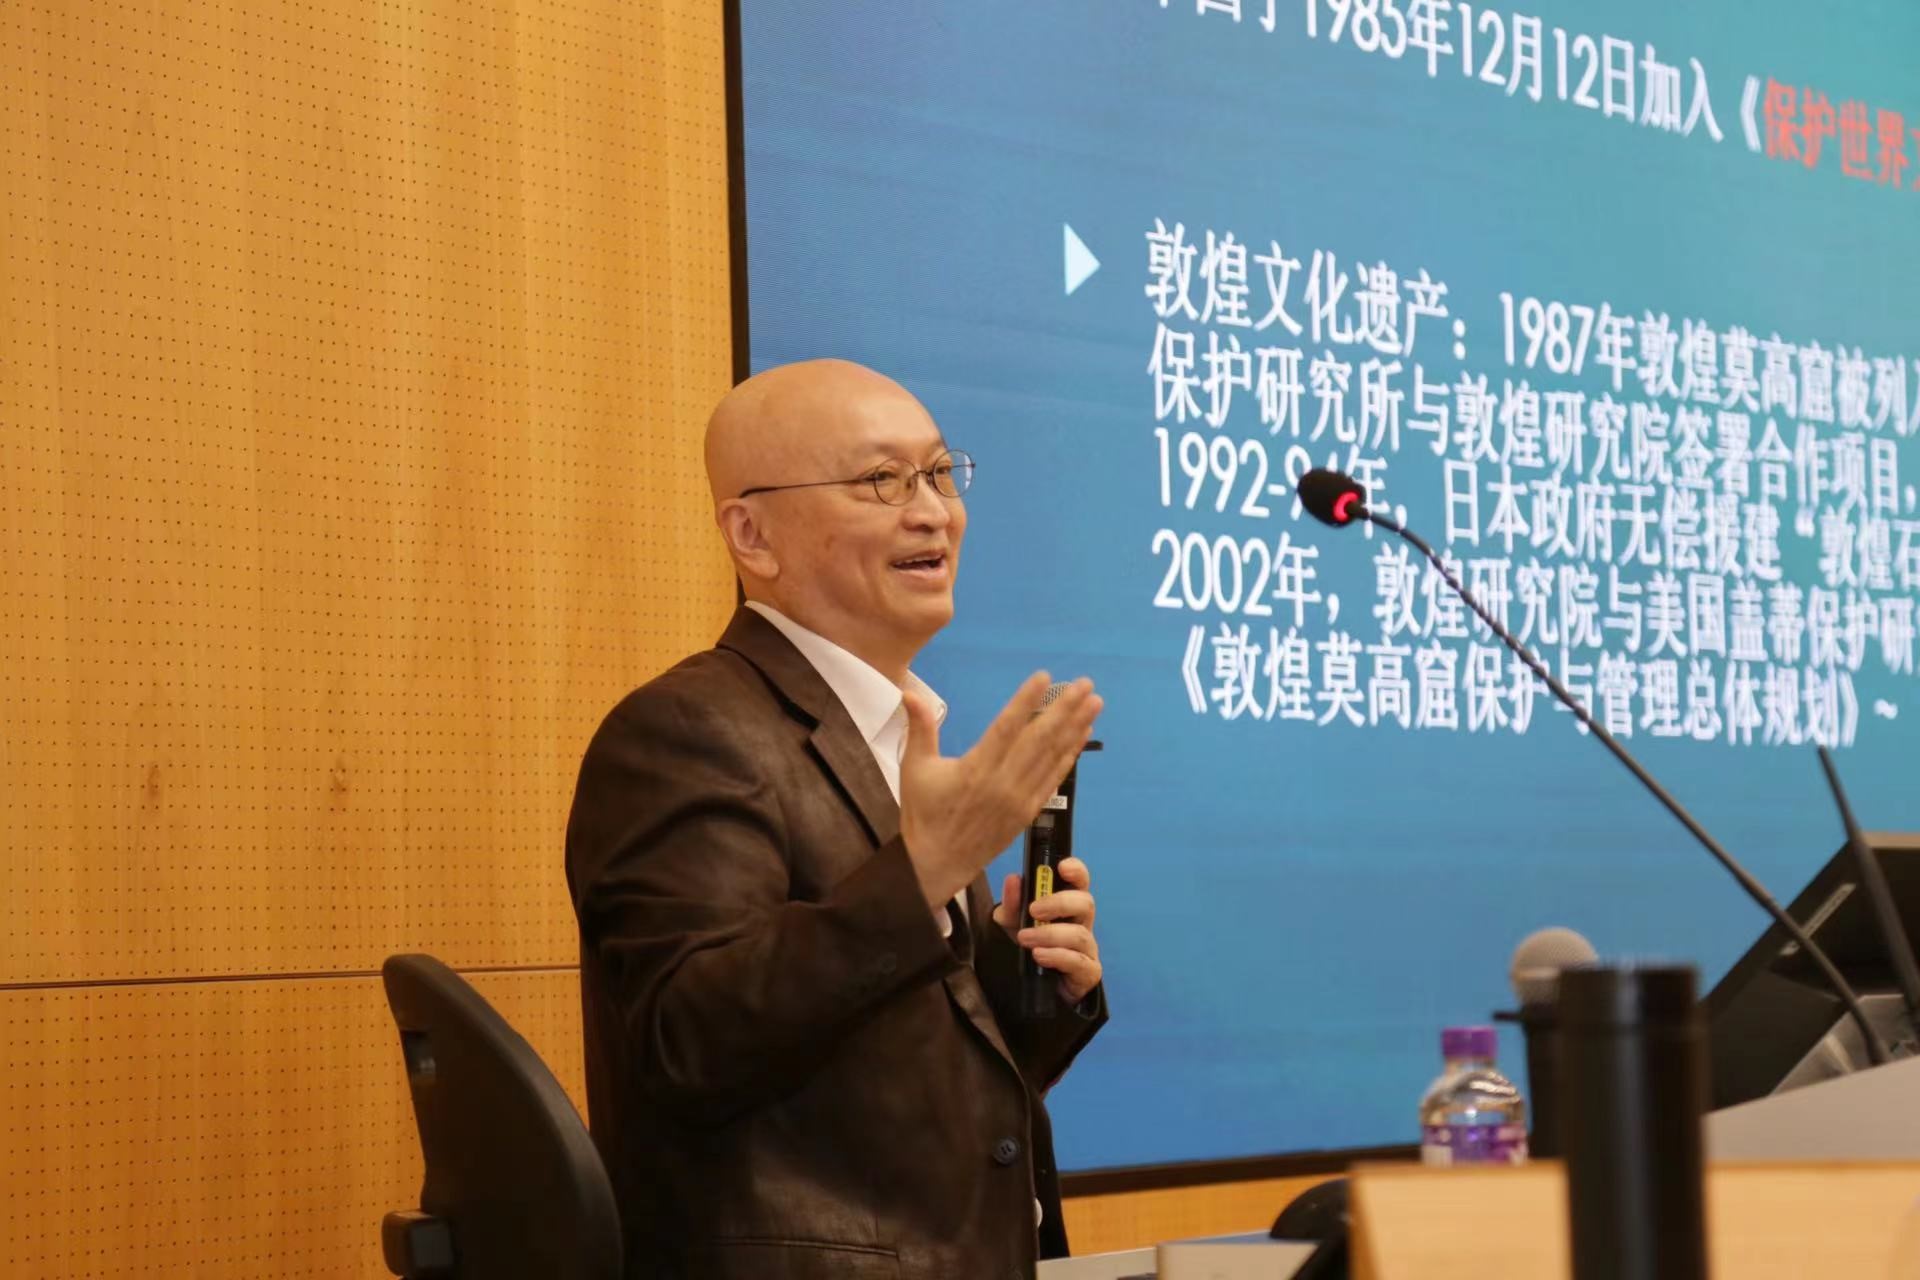 宁强教授讲座拉开了“文化遗产科普月”序幕
。保护文化遗产有助于维护中华文化的独特性和多样性�
。</div><h2 class=